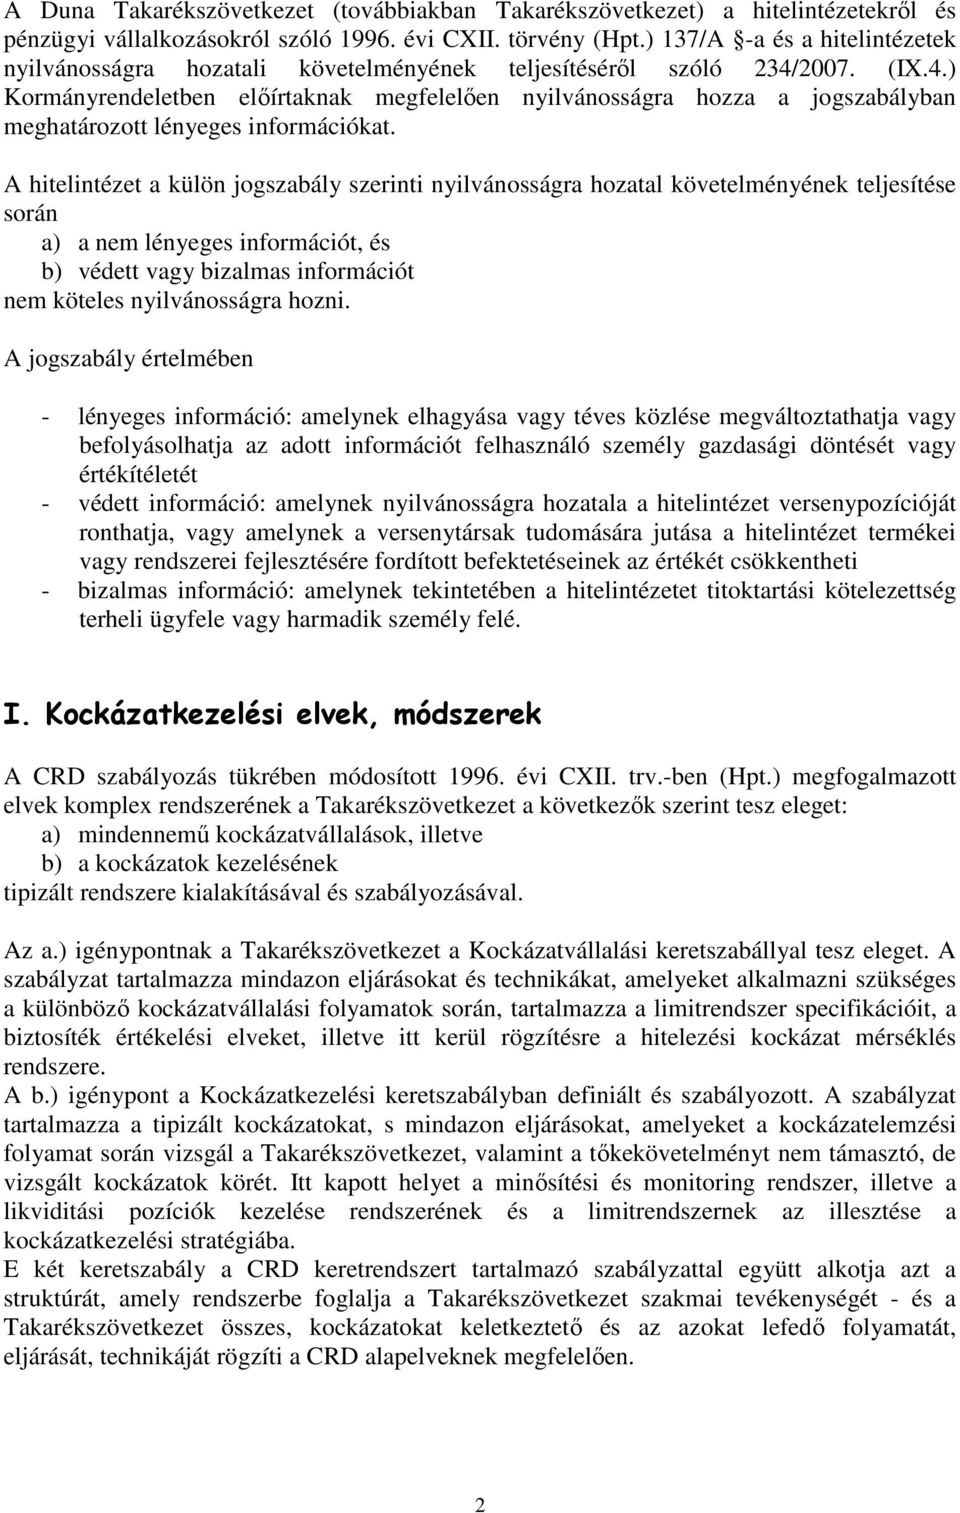 2007. (IX.4.) Kormányrendeletben elıírtaknak megfelelıen nyilvánosságra hozza a jogszabályban meghatározott lényeges információkat.